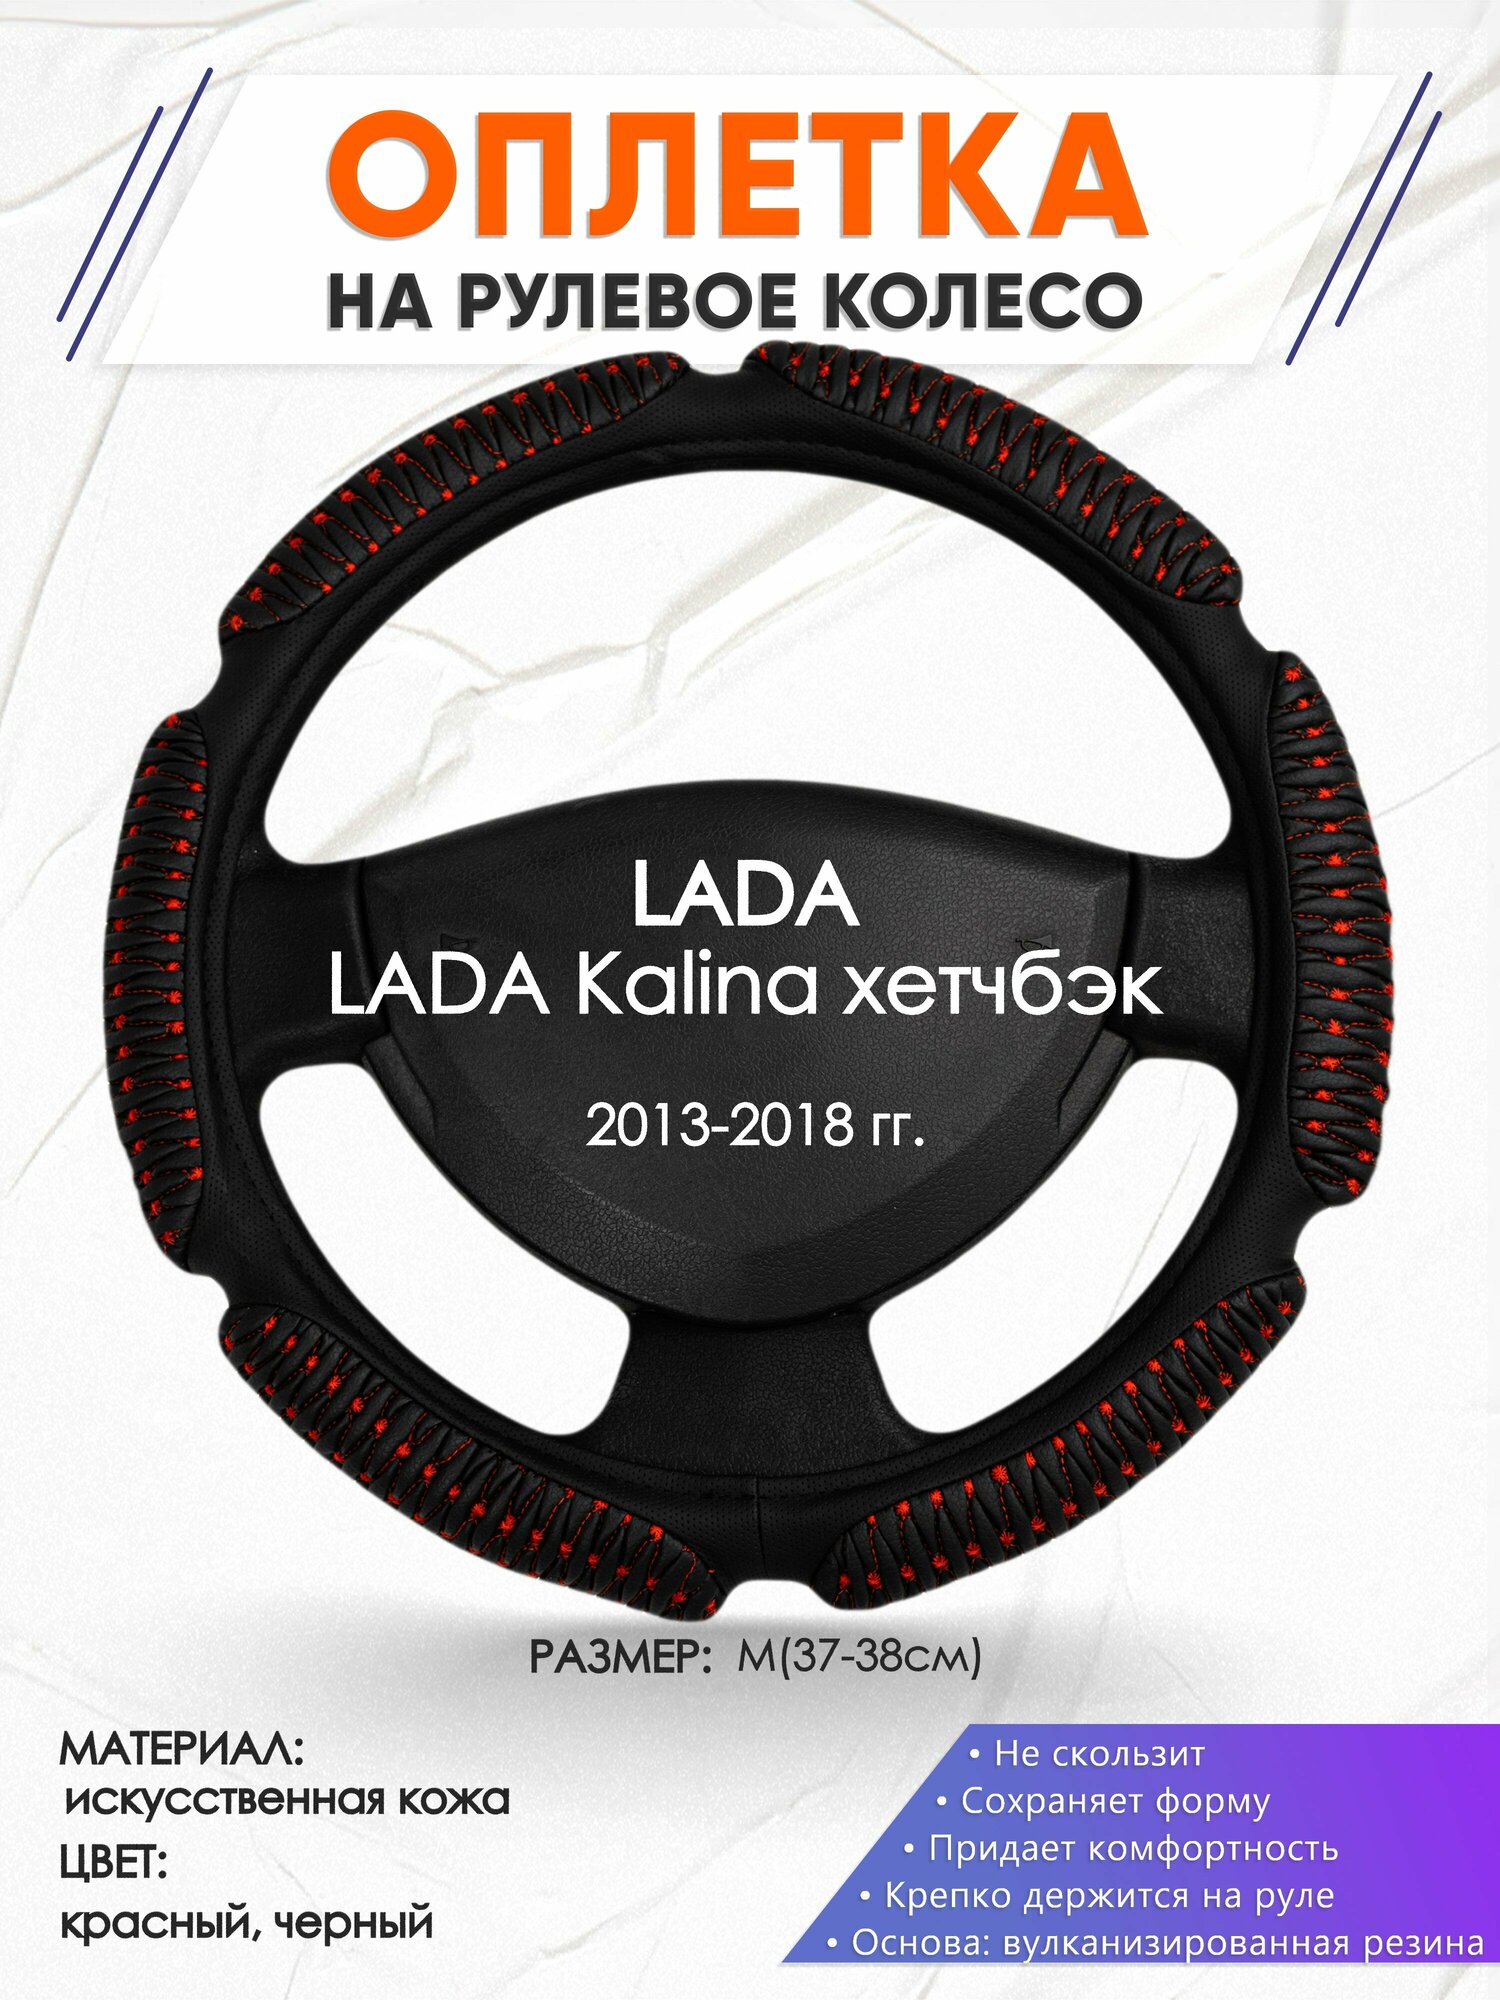 Оплетка наруль для LADA Kalina хетчбэк(Лада Калина) 2013-2018 годов выпуска, размер M(37-38см), Искусственная кожа 01